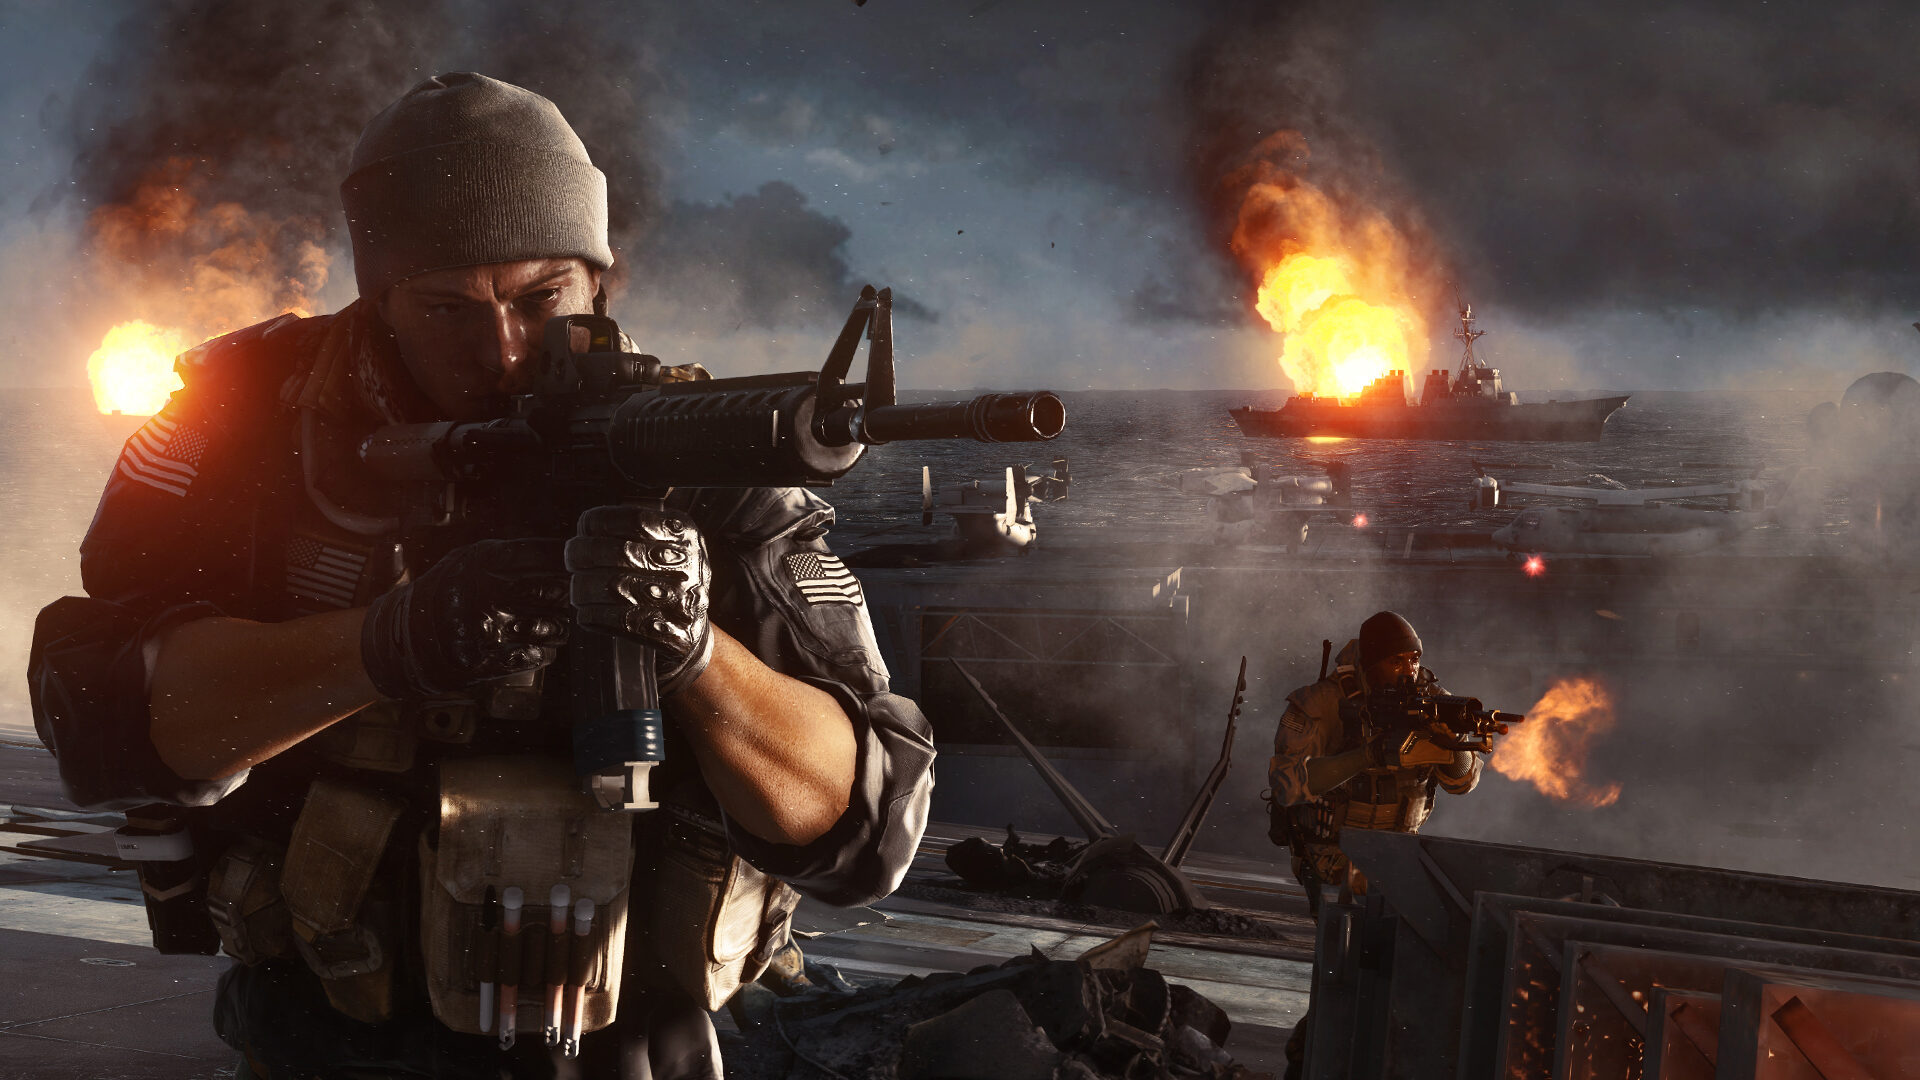 Novas características para Battlefield 4 são reveladas: VOIP